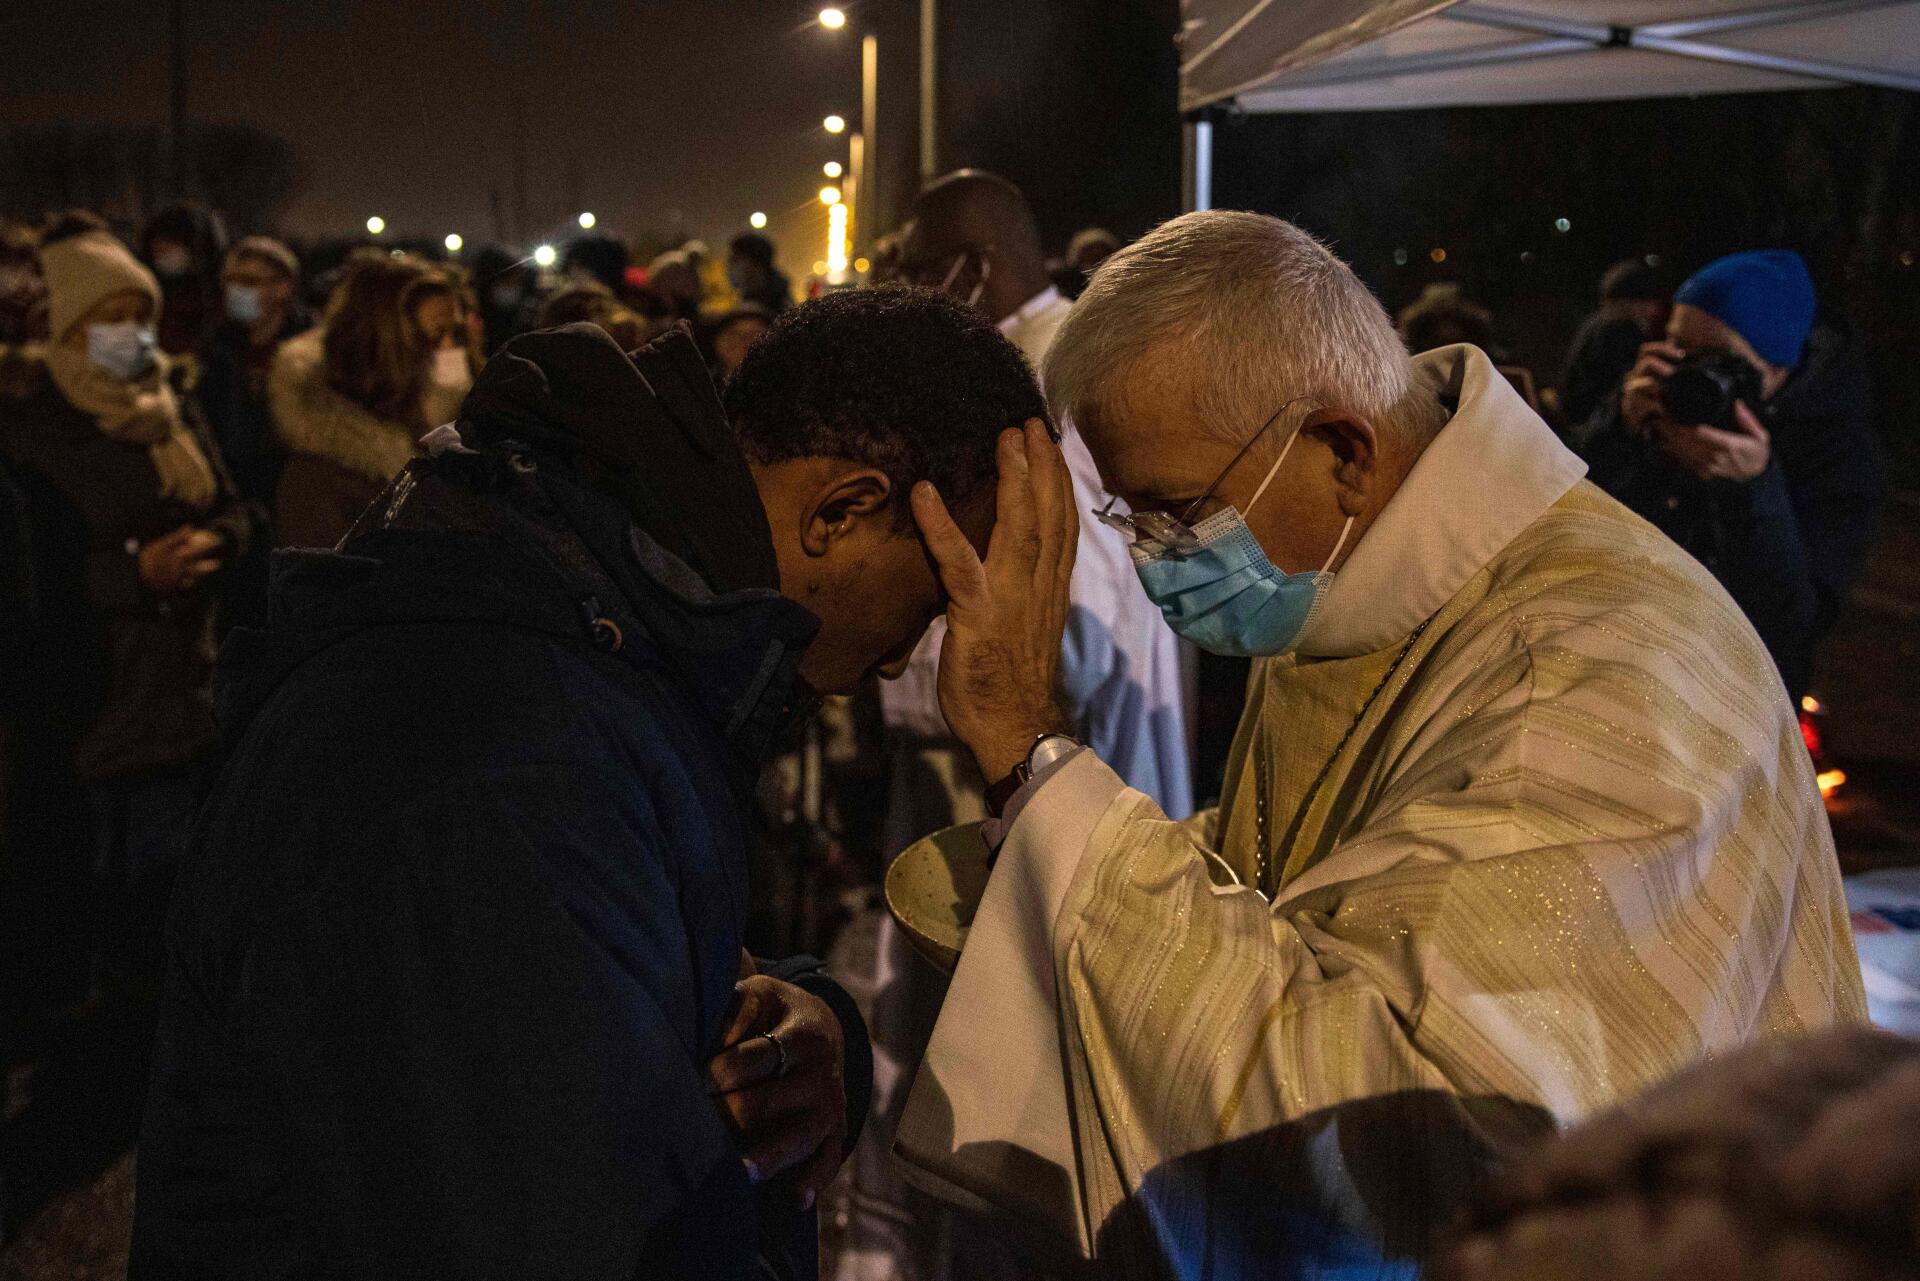 De bisschop van Arras, monseigneur Olivier Leborgne, zegent de gelovigen op vrijdag 24 december tijdens de mis die wordt georganiseerd in een migrantenkamp in Calais (Pas de Calais).